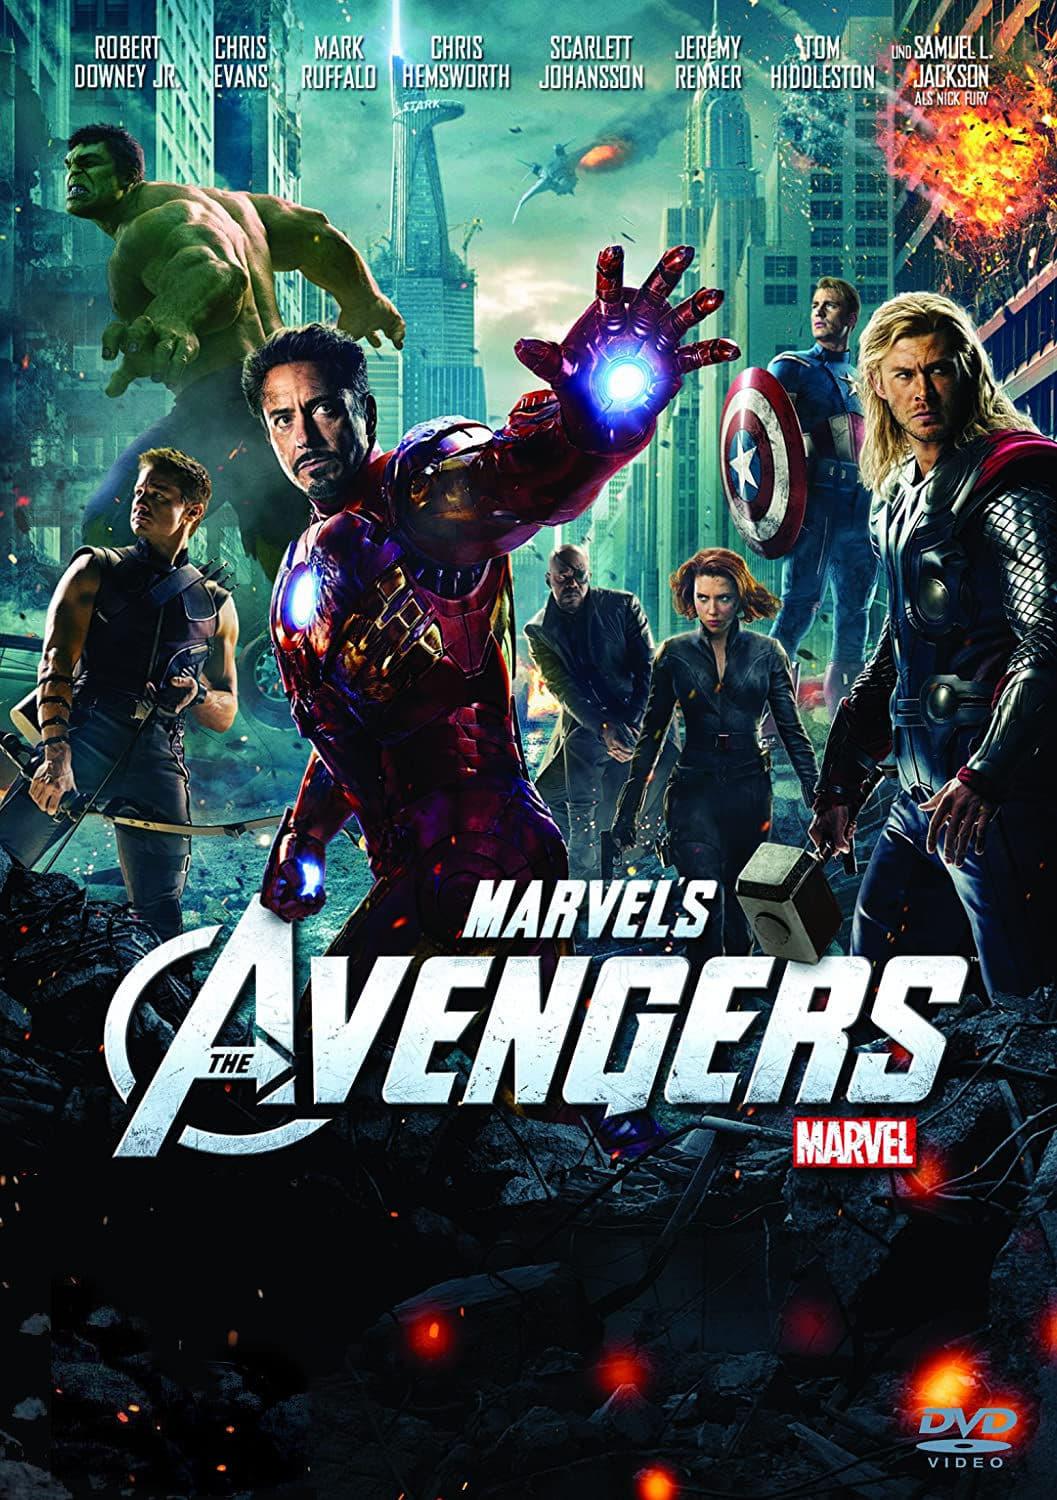 Marvel's The Avengers poster